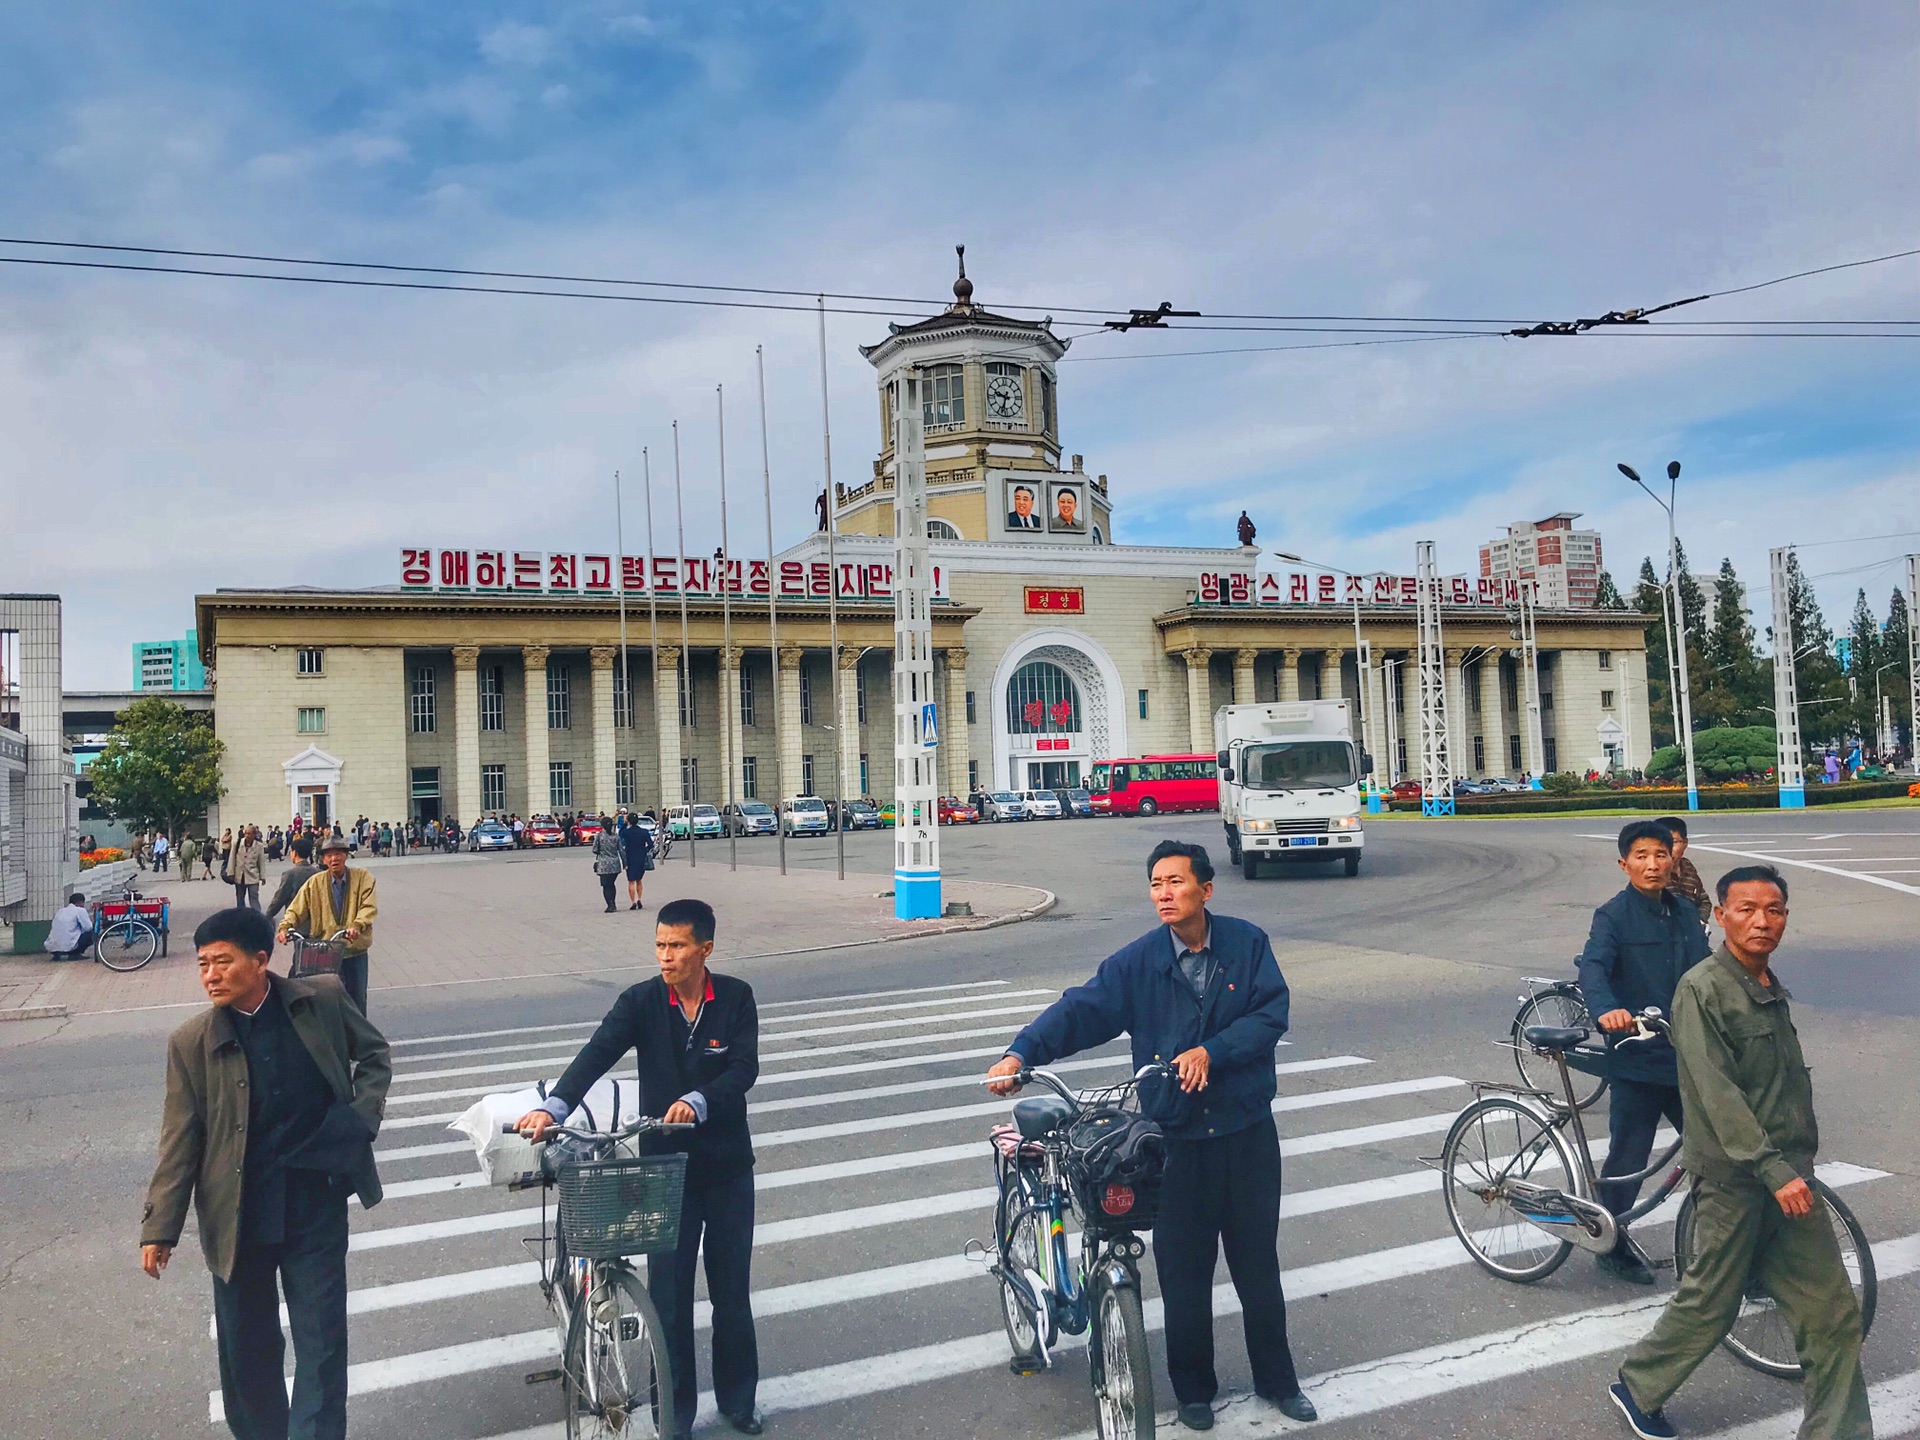 走进朝鲜,遍地都是中国游客,那么朝鲜姑娘眼中的中国是怎样的呢